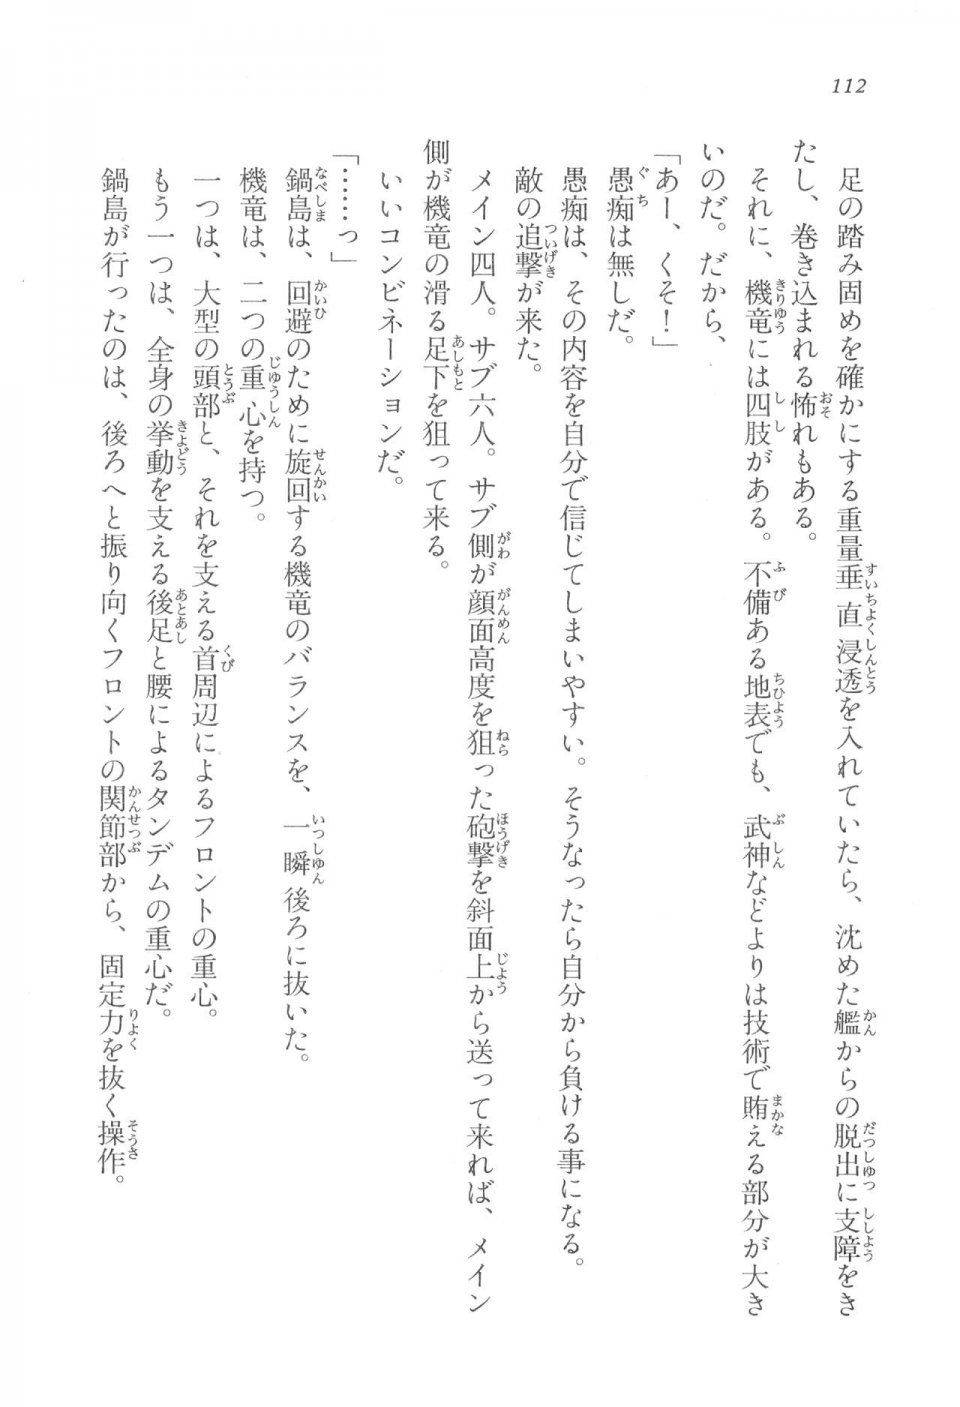 Kyoukai Senjou no Horizon LN Vol 17(7B) - Photo #112